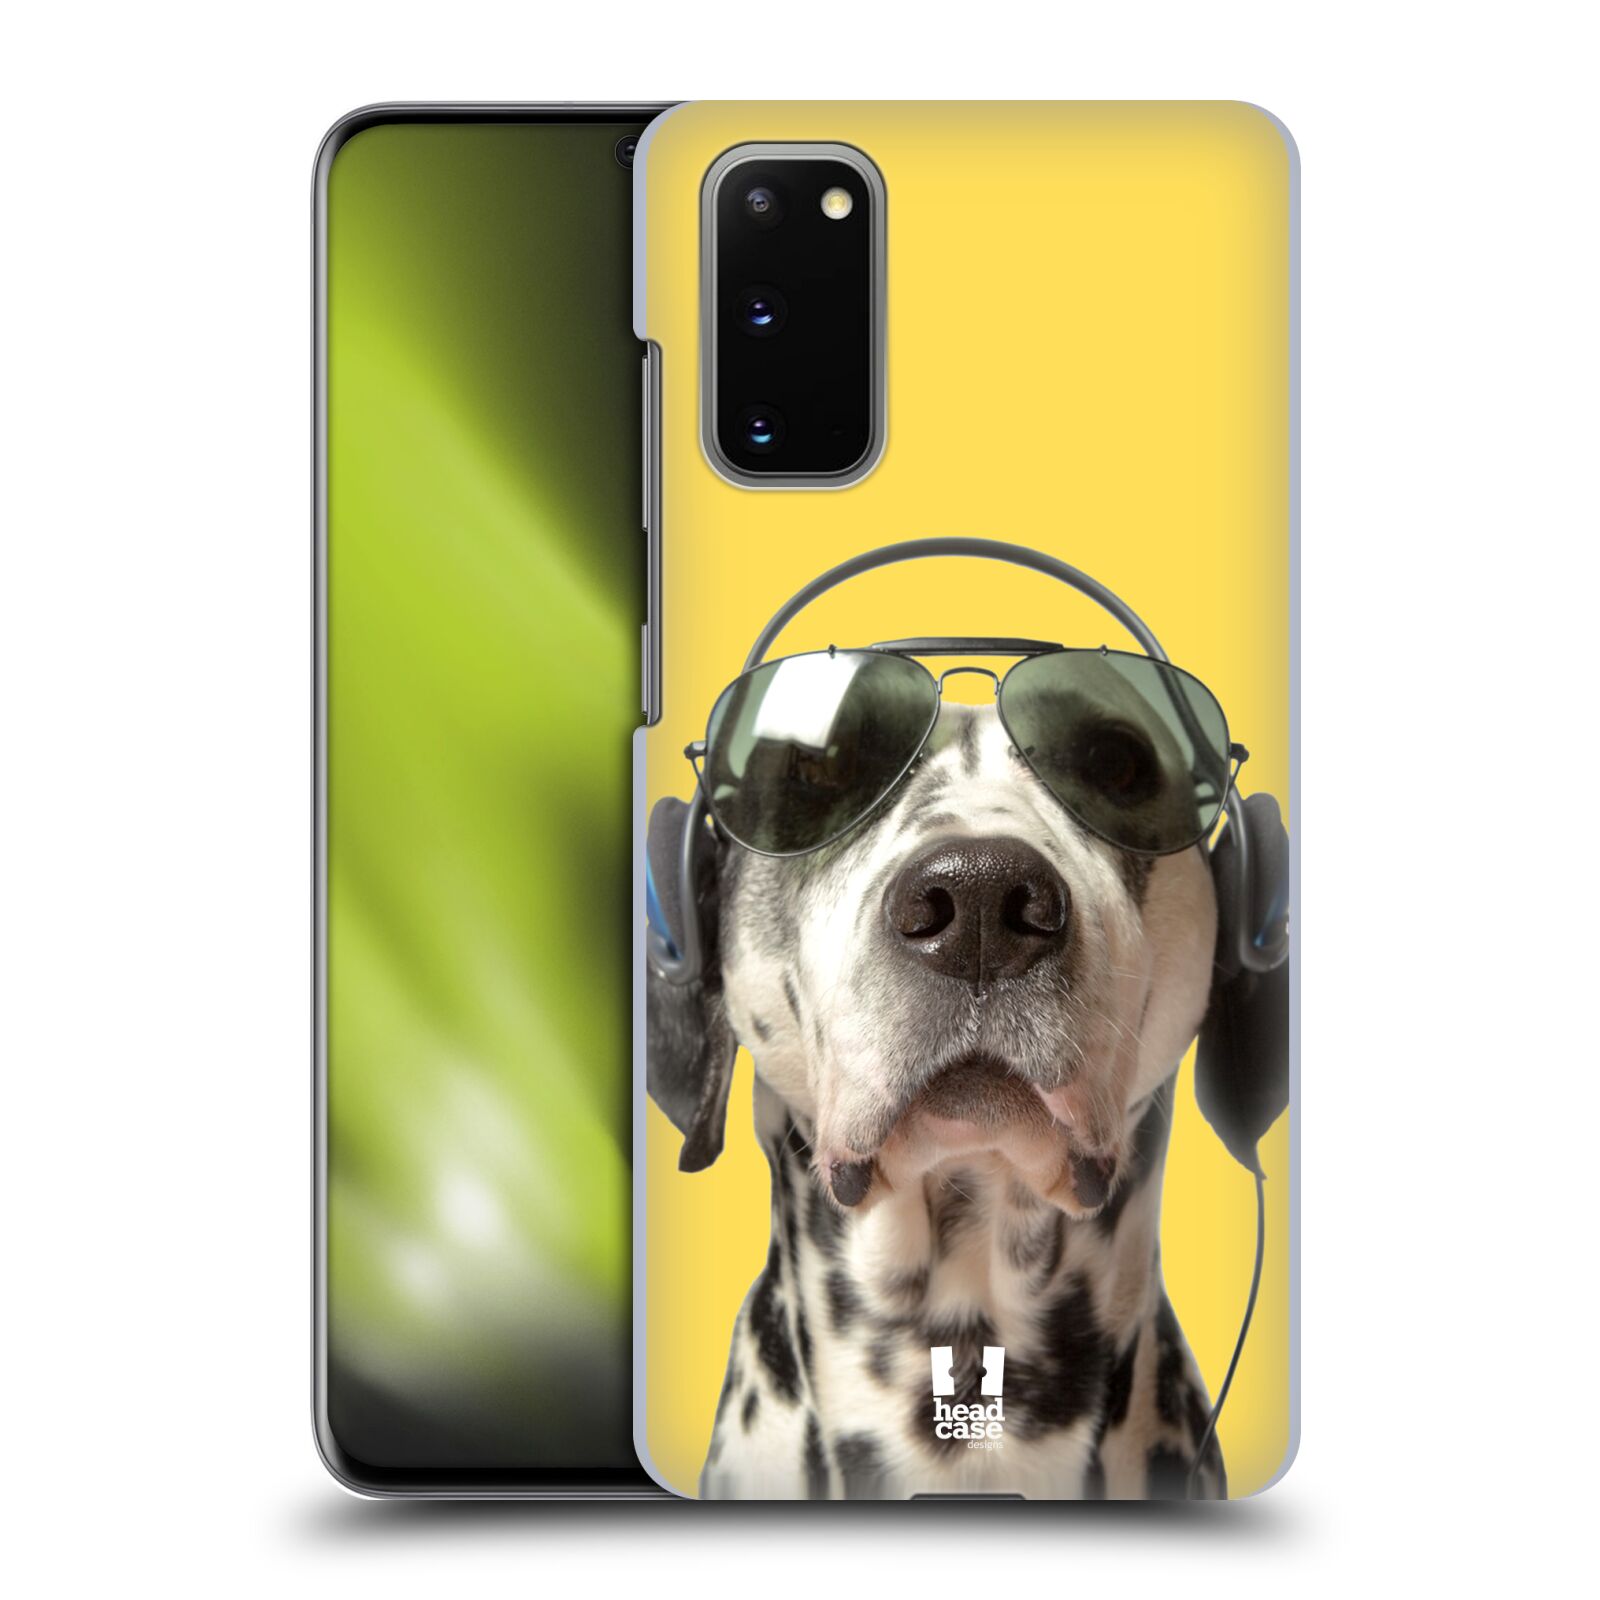 Pouzdro na mobil Samsung Galaxy S20 - HEAD CASE - vzor Legrační zvířátka dalmatin se sluchátky žlutá